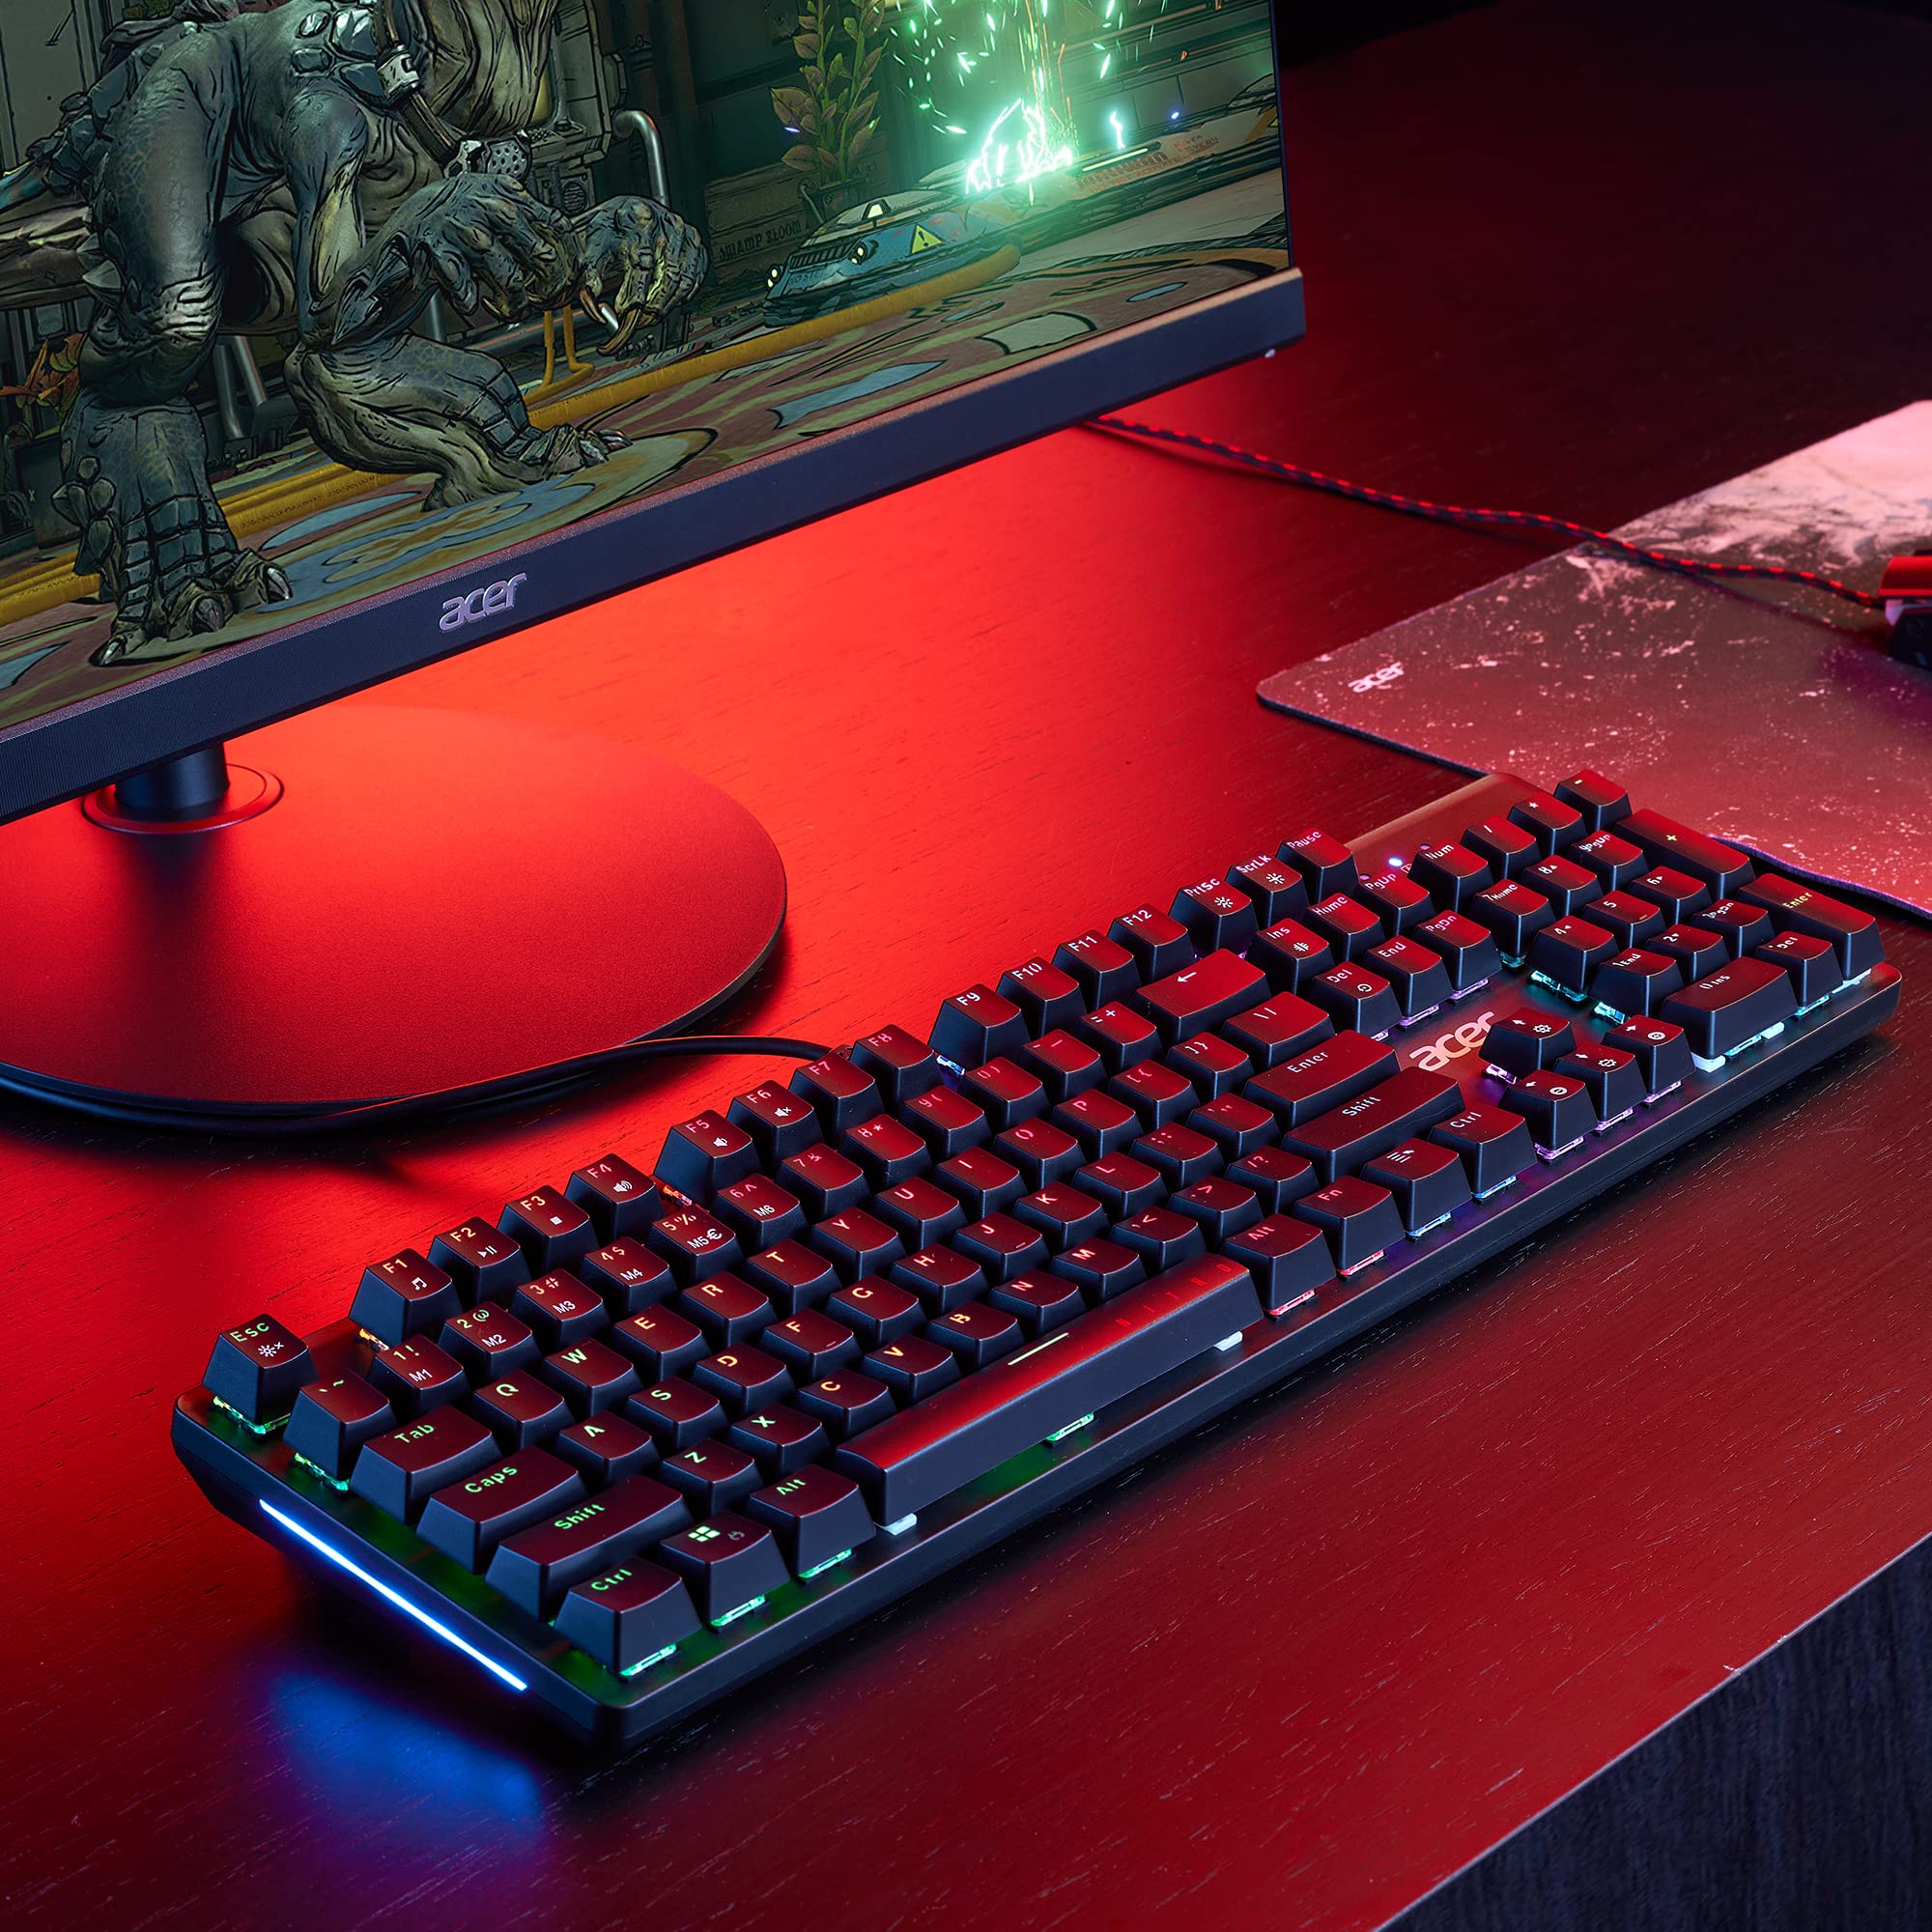 Acer Nitro Gen 2 Wired Gaming Keyboard - RGB Illuminated Keyboard | 100% Anti-Ghosting (N-Key Rollover) | Mechanical Axis | Ergonomic Arc Keycaps | Embedded Multimedia Keys